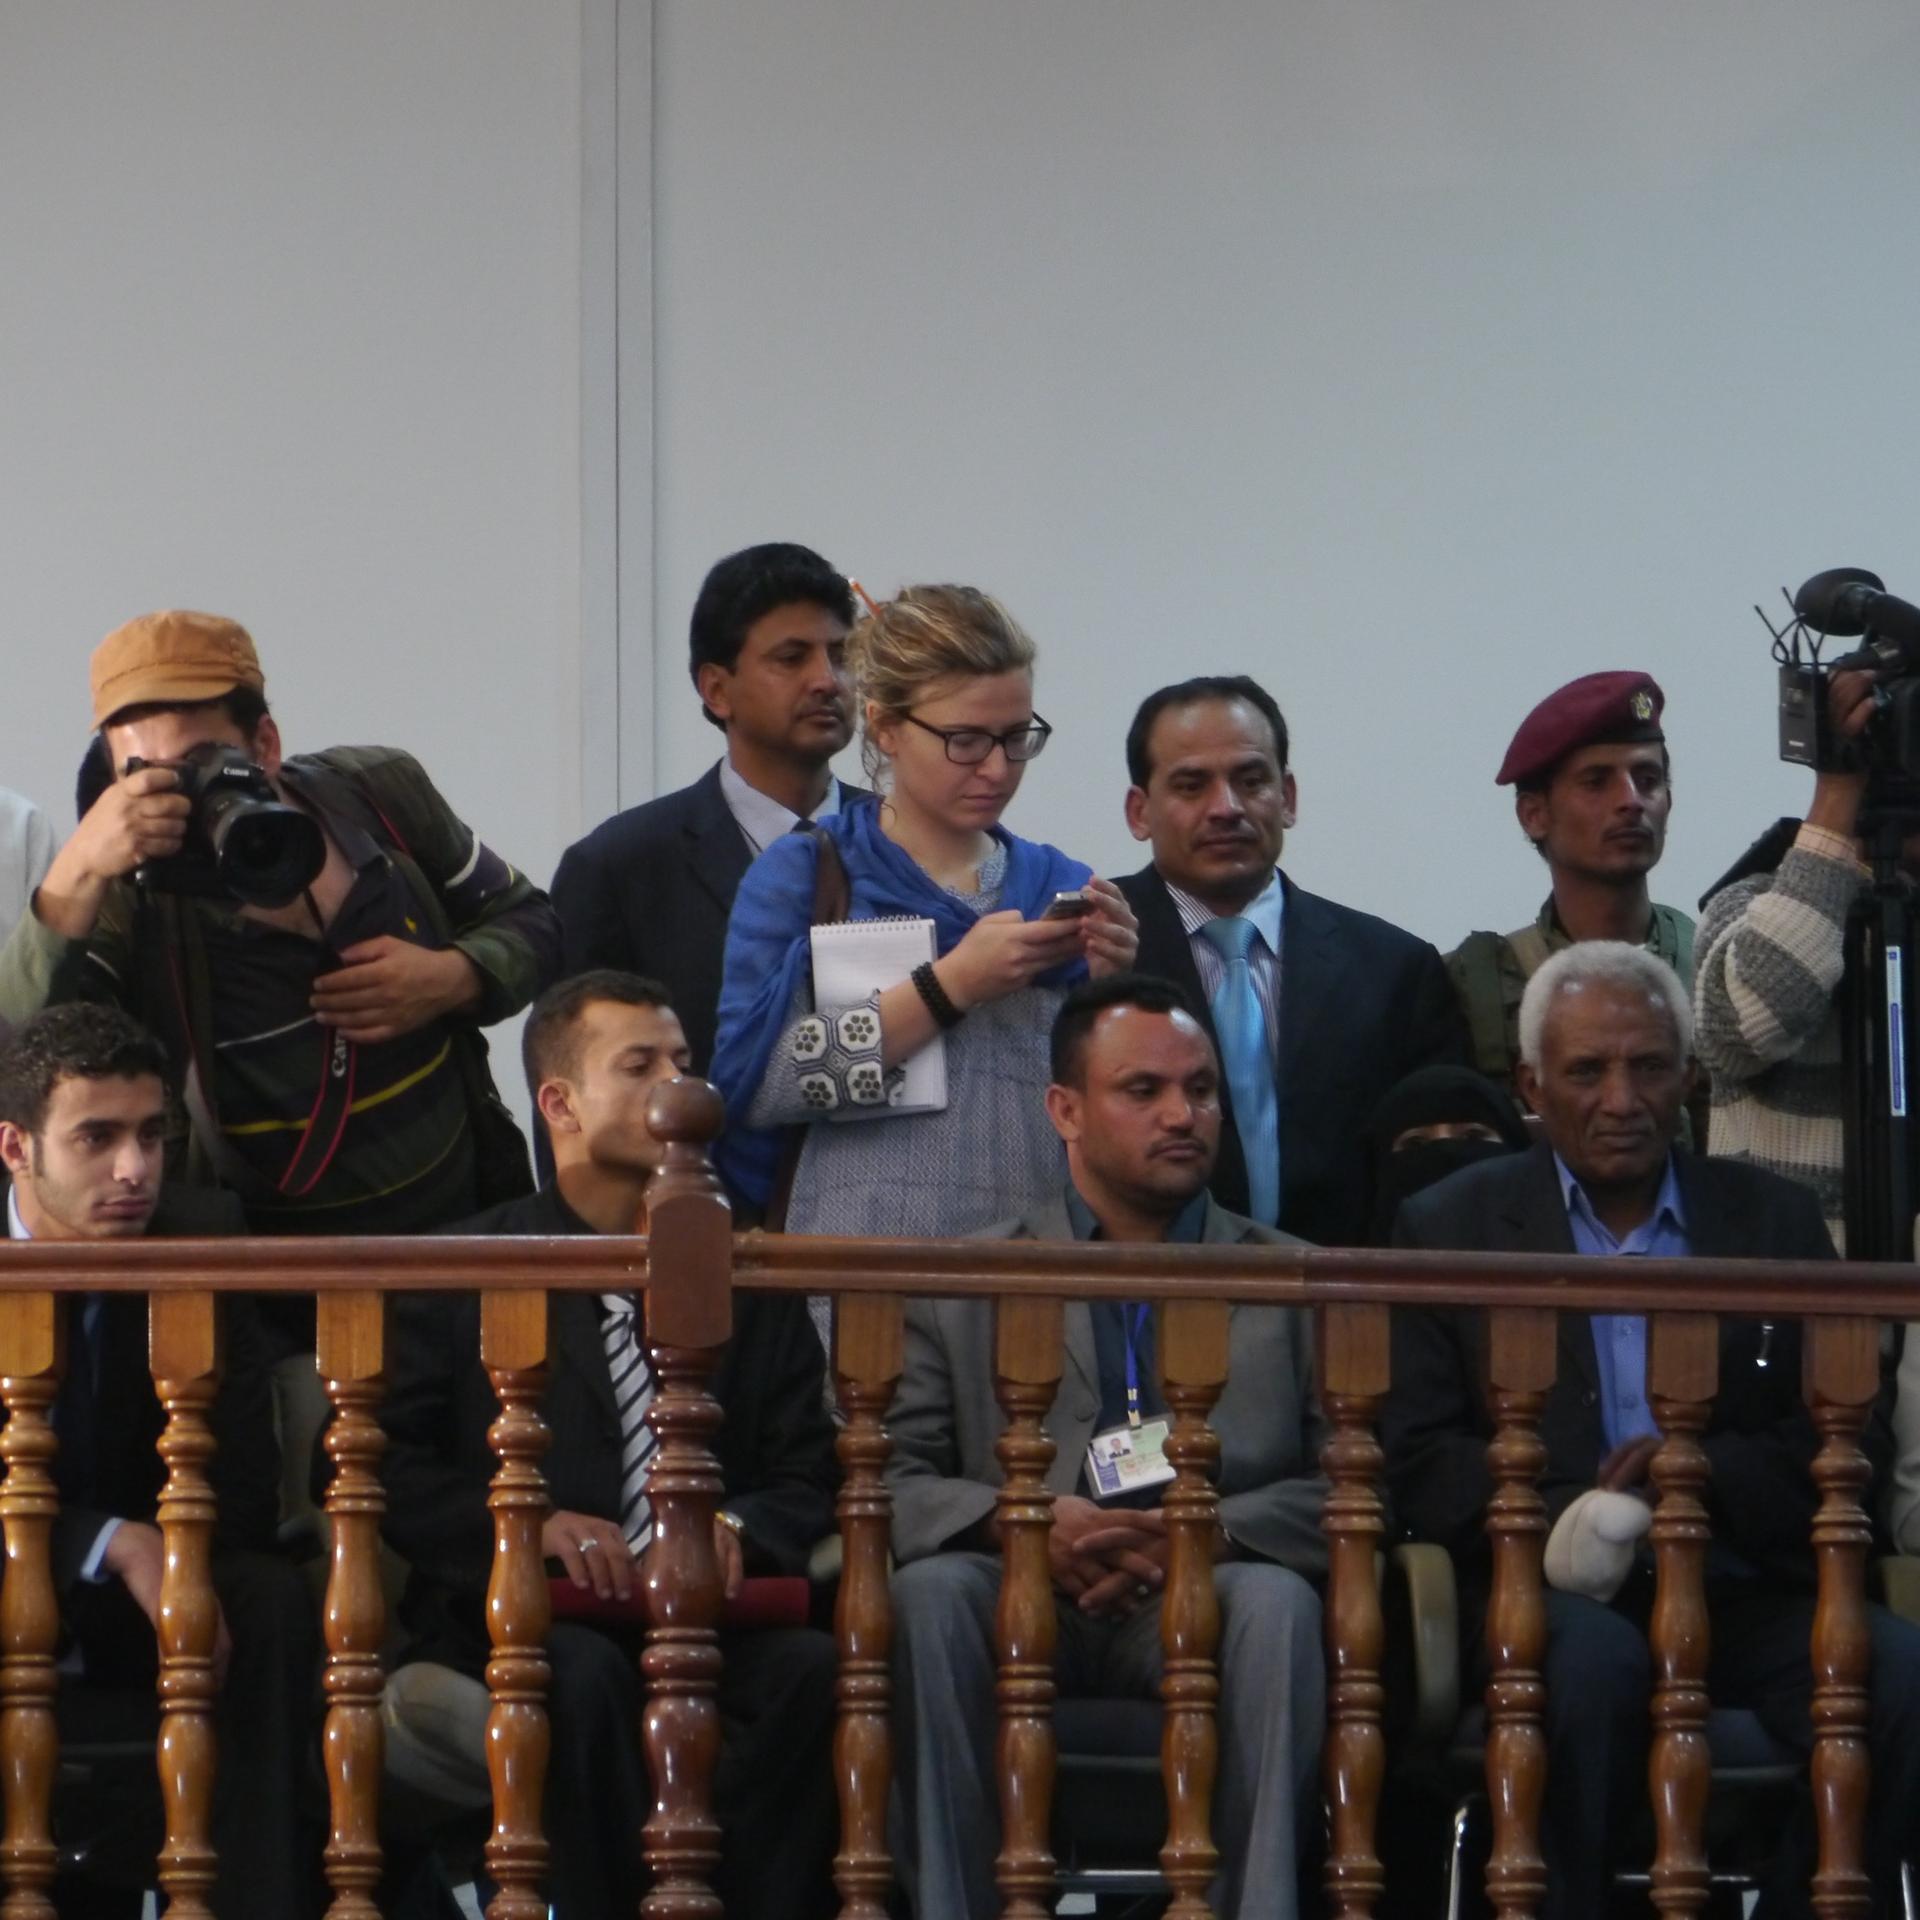 Reporter Laura Kasinof covering the inauguration of Yemeni President Abdurabbu Mansour Hadi, February 2012.